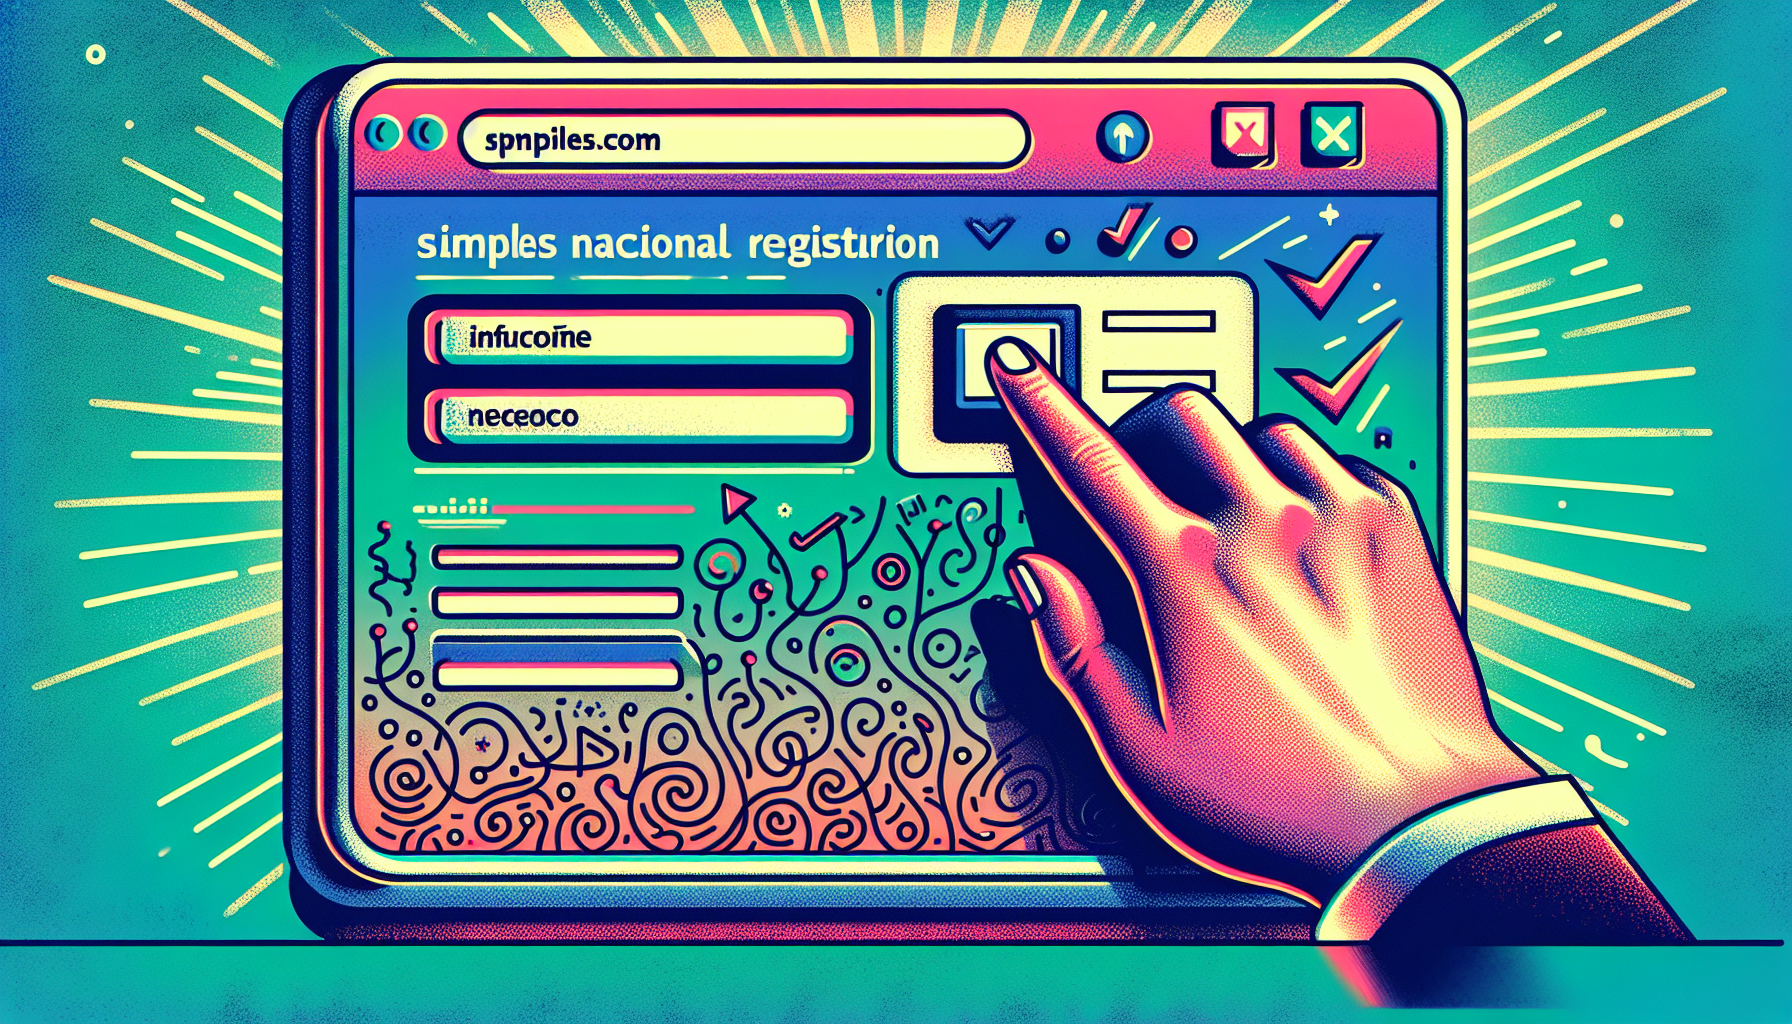 Ilustração de um computador com o site de inscrição no Simples Nacional na tela